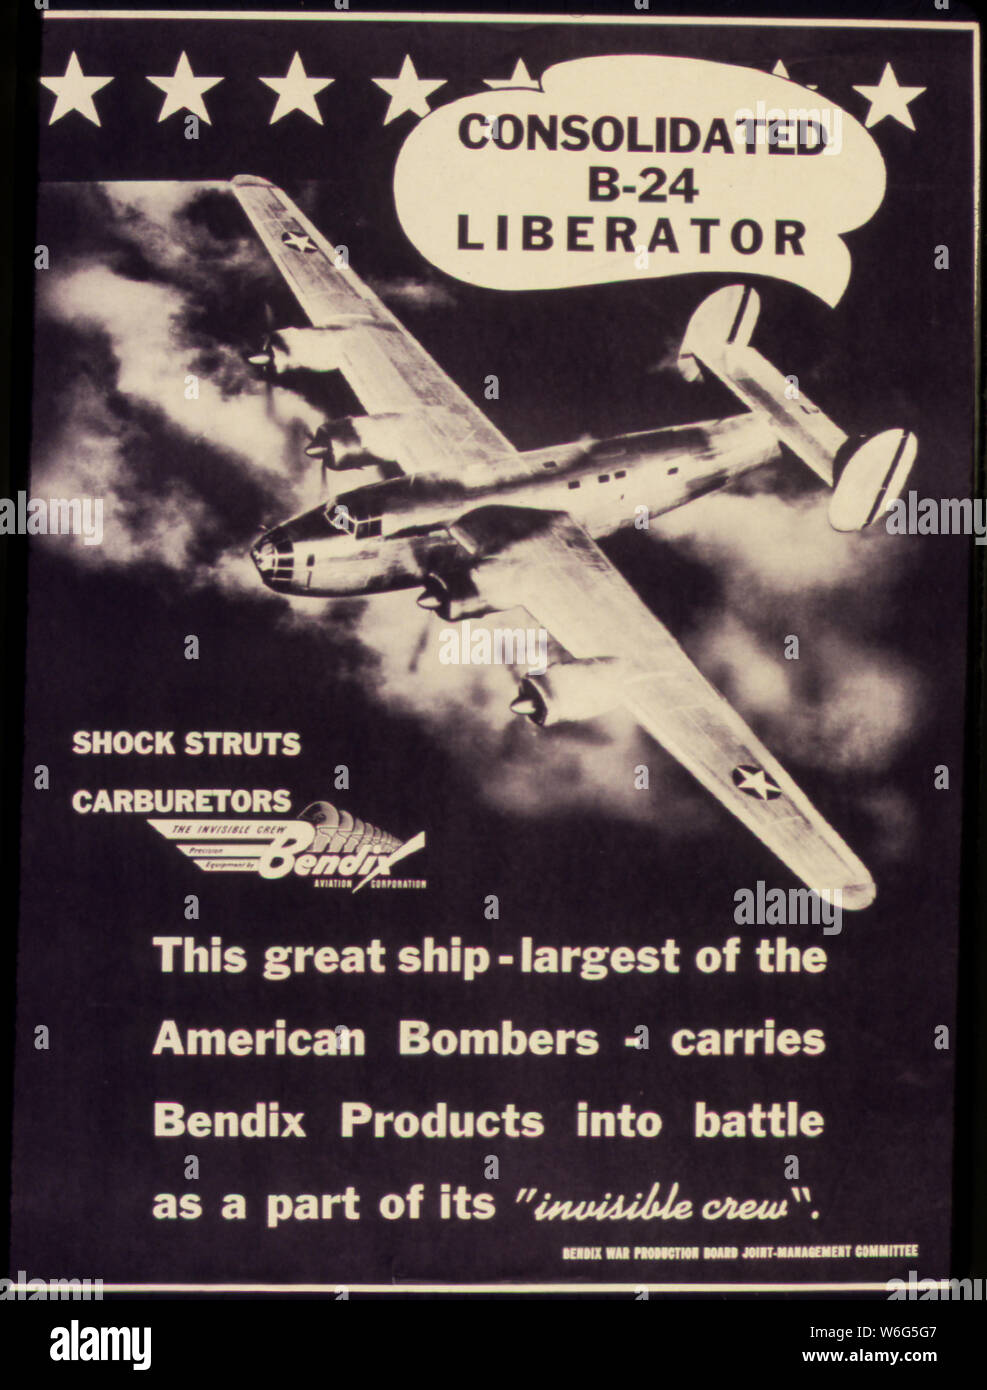 Consolidated B-24 Liberator. Questa grande nave - il più grande dei bombardieri americani - porta Bendix prodotti nella battaglia come una parte del suo equipaggio invisibile. Foto Stock